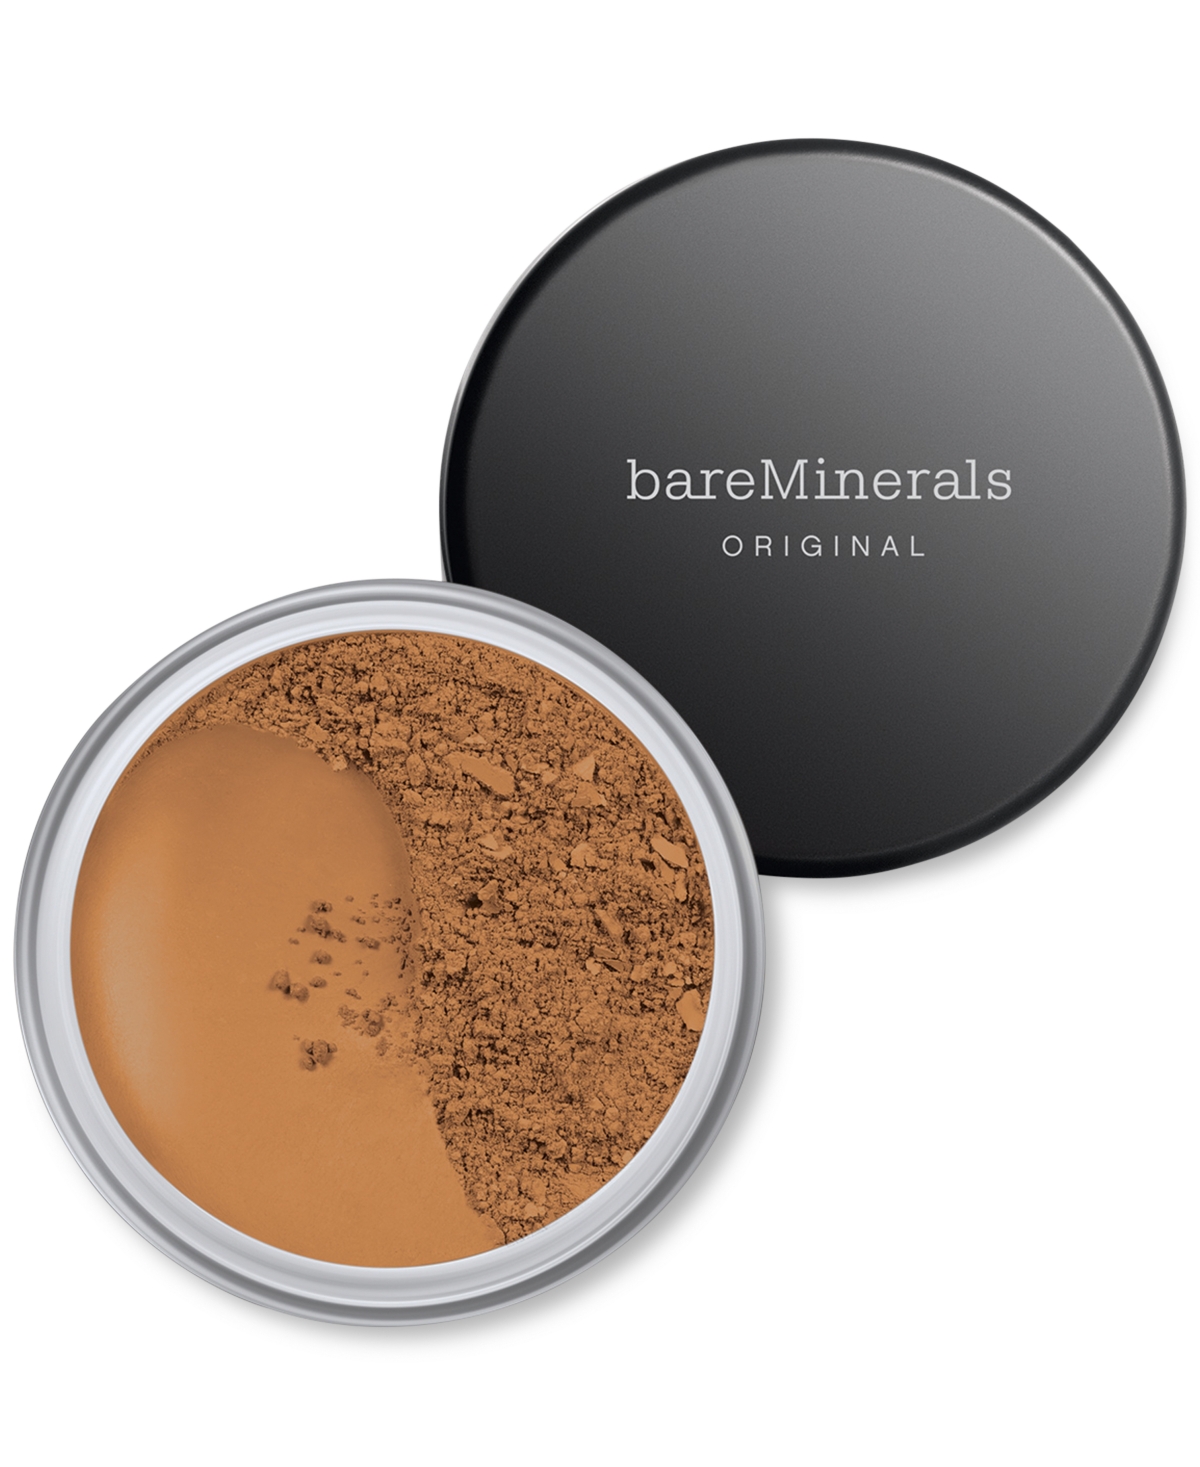 Bareminerals Original Loose Powder Foundation Spf 15 In Warm Dark  - For Dark Skin With Warm Und